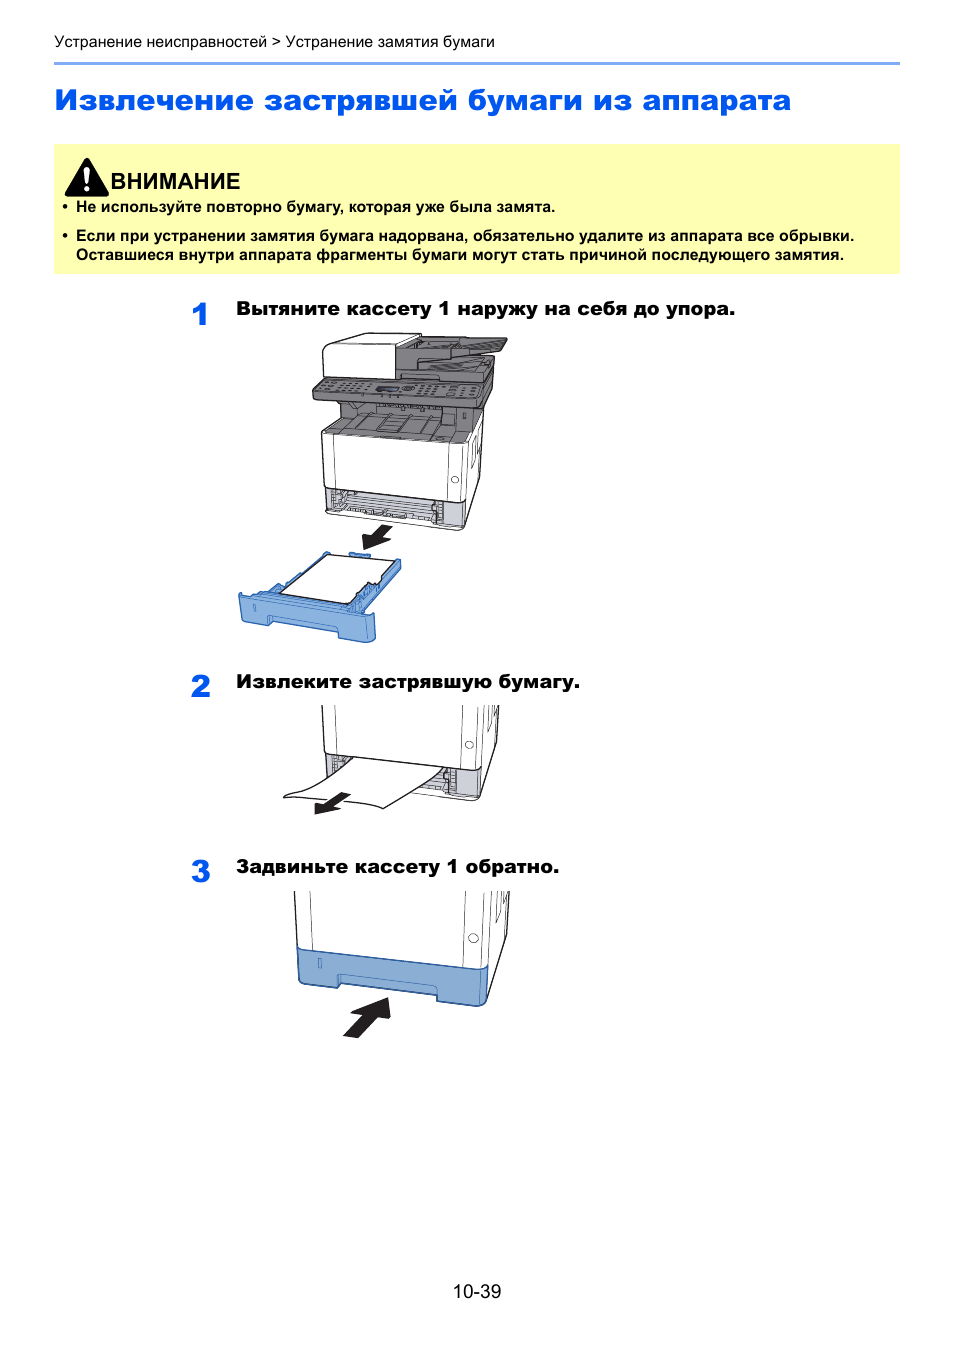 Что делать, если бумага застревает после выключения принтера в середине печати